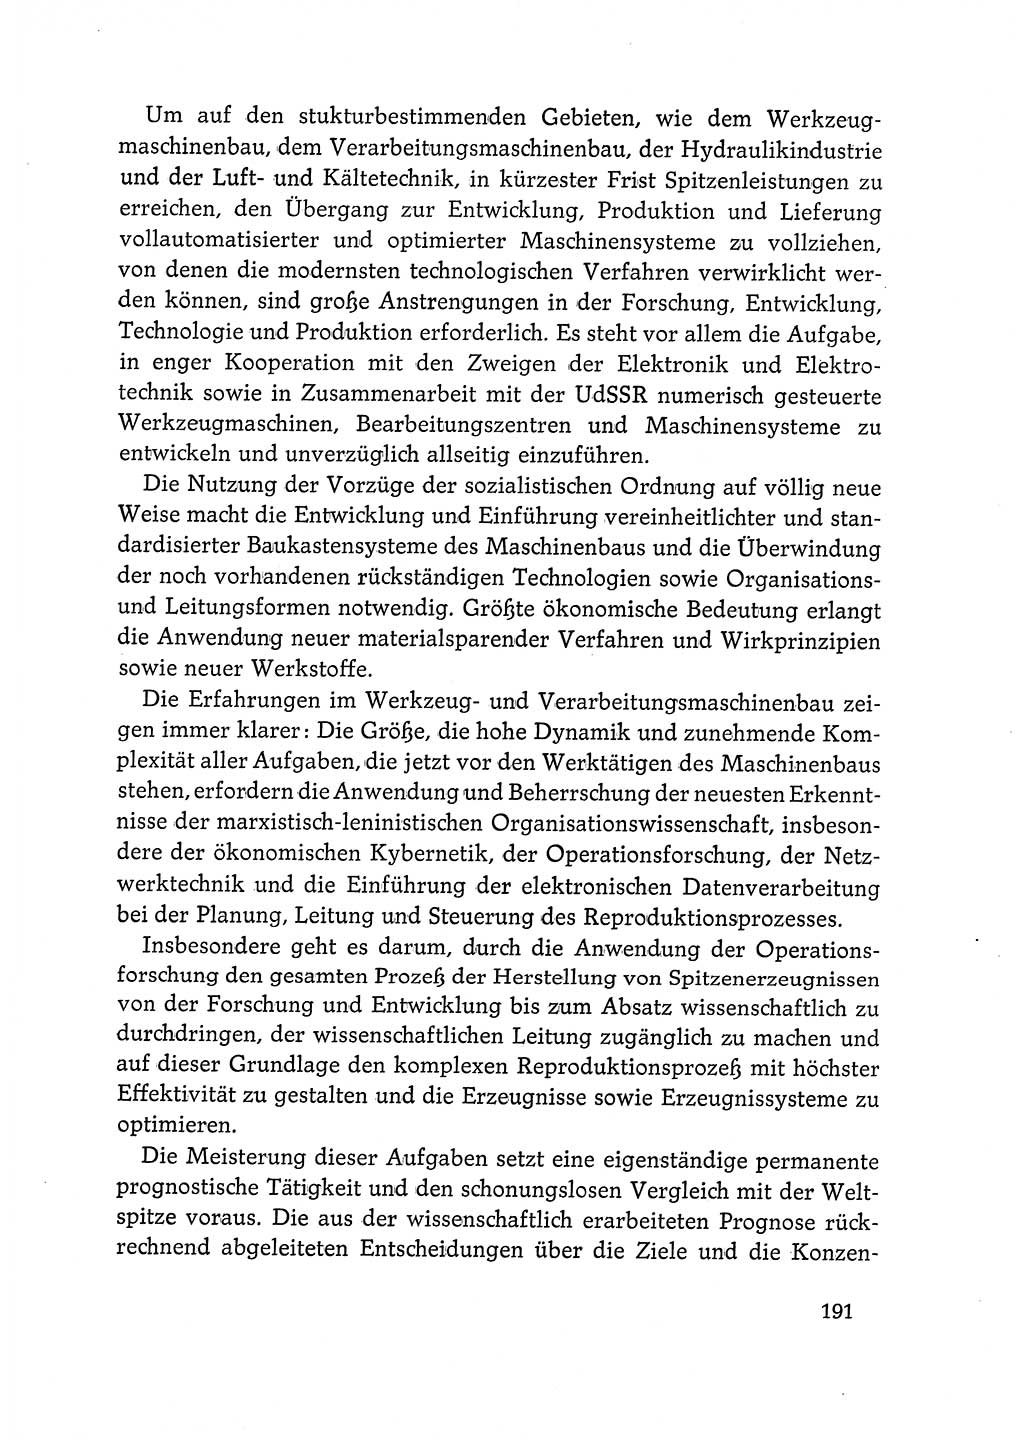 Dokumente der Sozialistischen Einheitspartei Deutschlands (SED) [Deutsche Demokratische Republik (DDR)] 1968-1969, Seite 191 (Dok. SED DDR 1968-1969, S. 191)